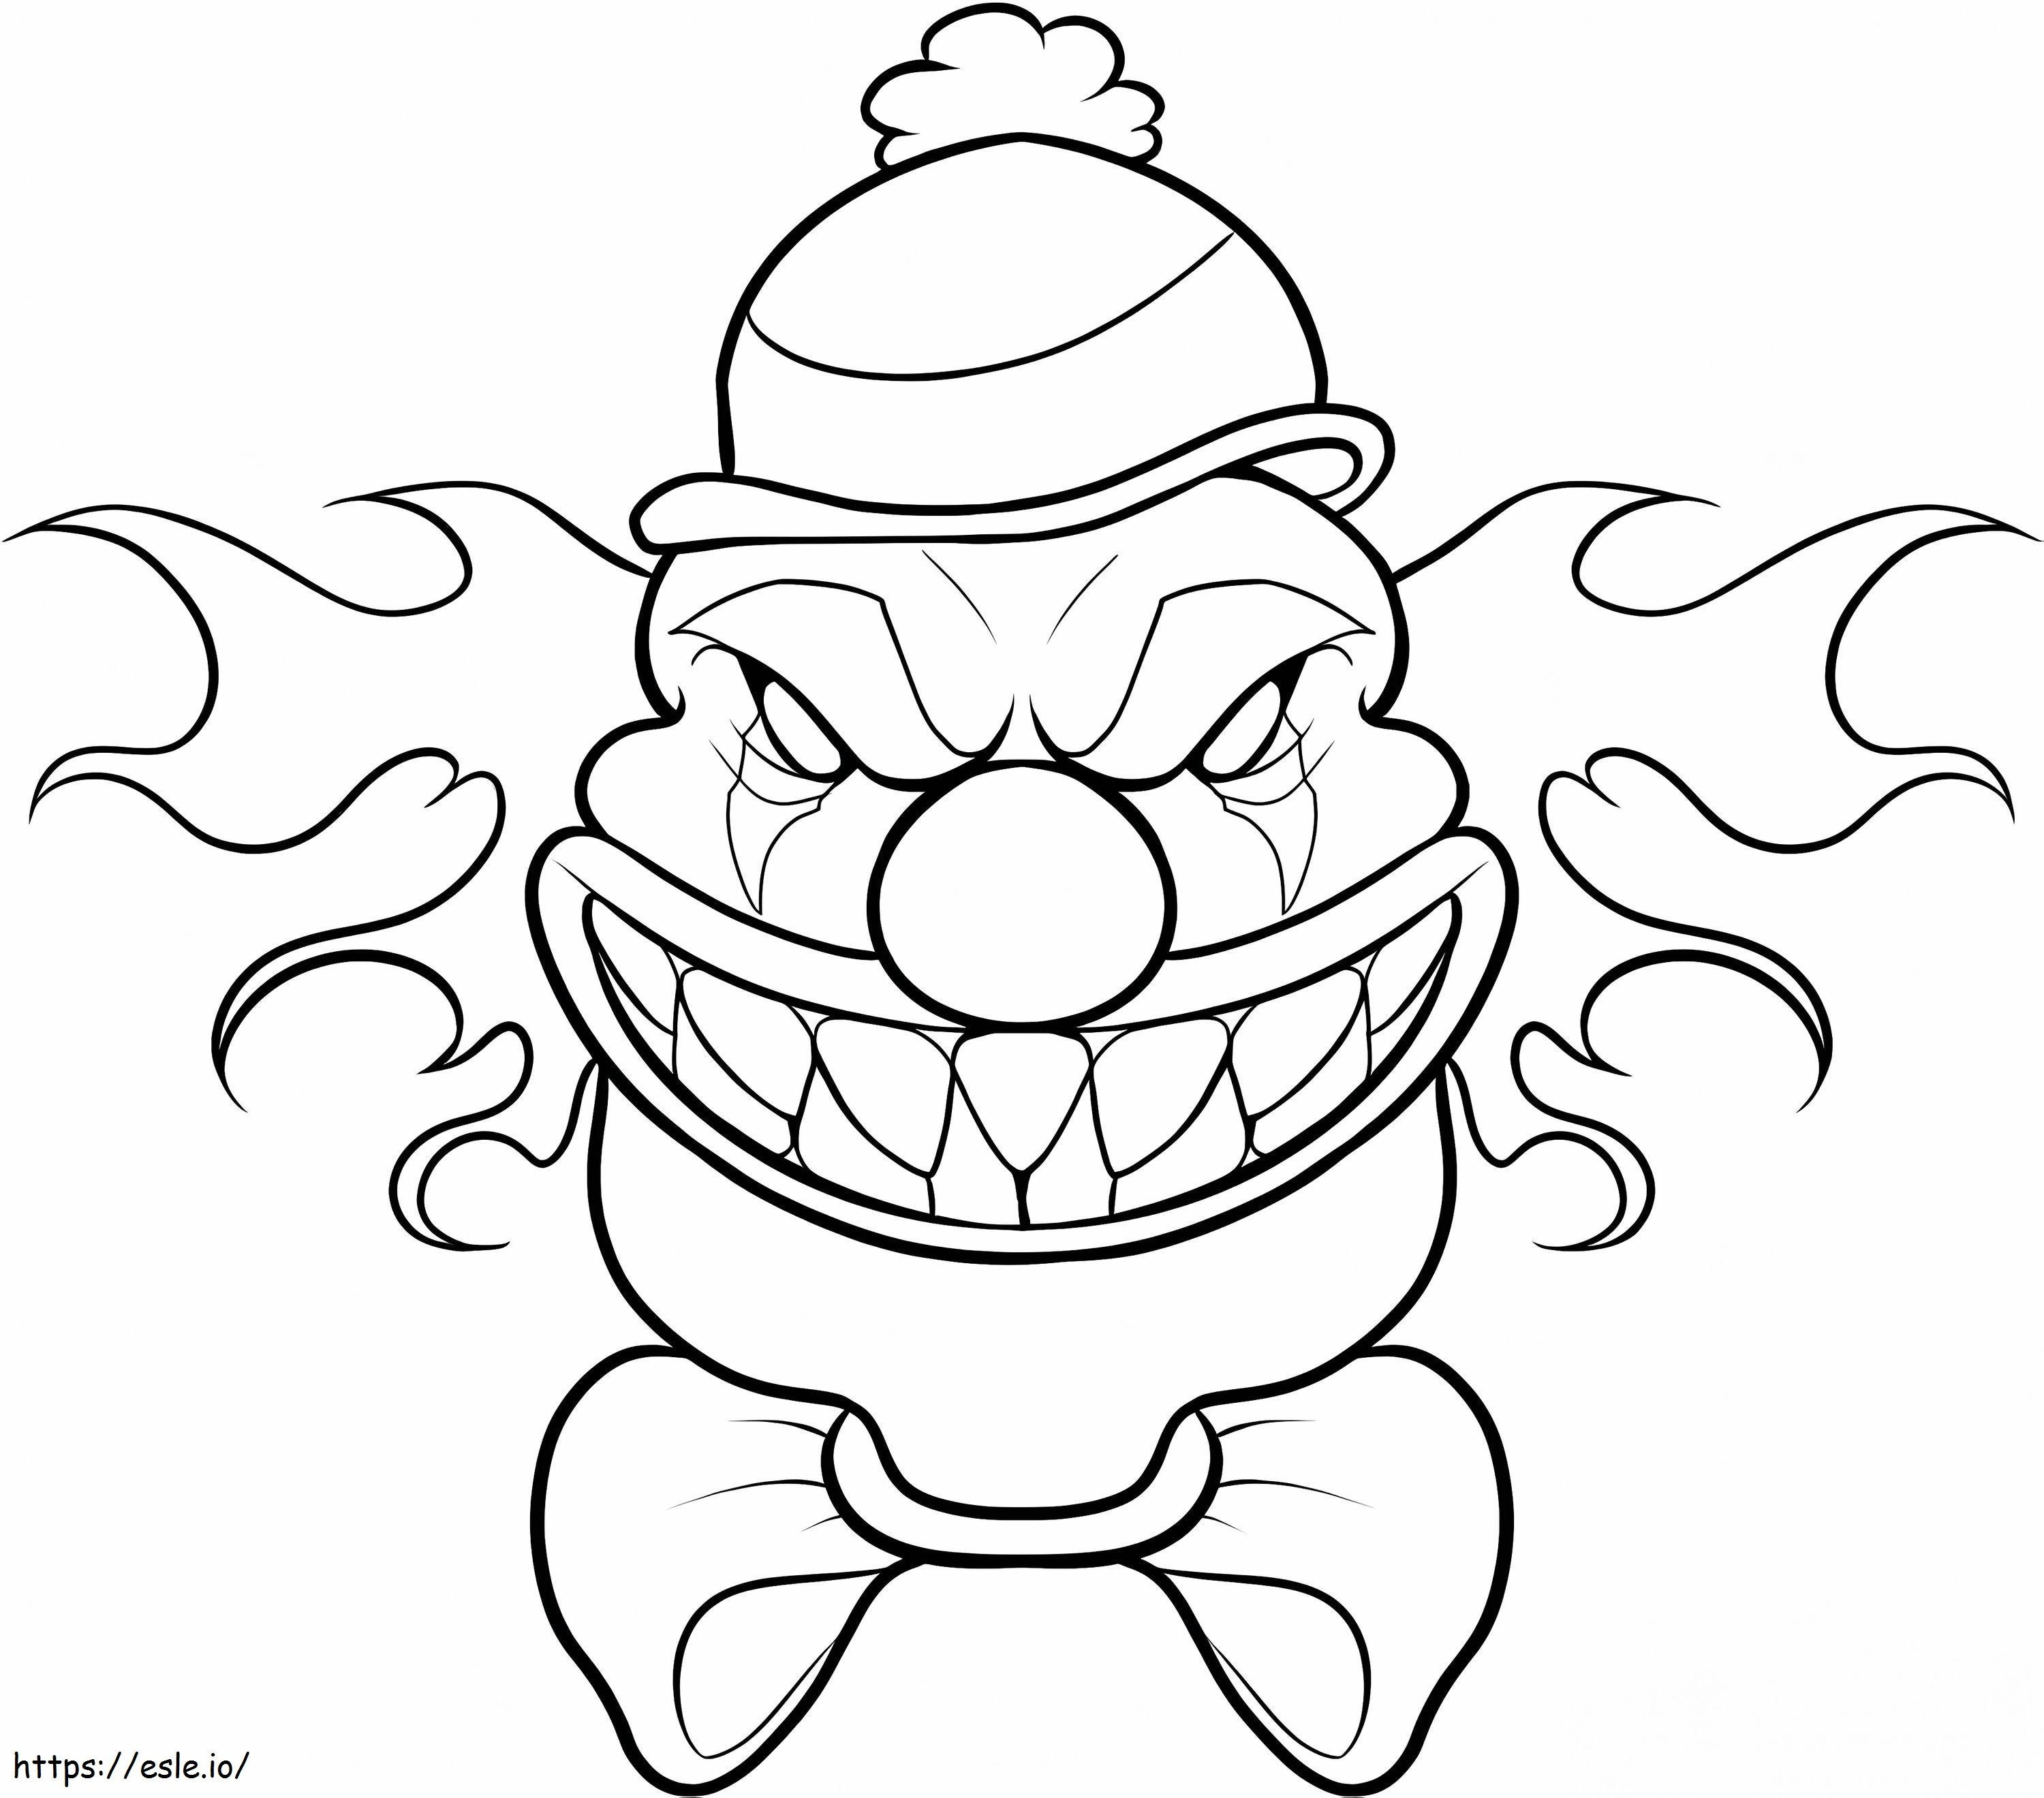 Gruselige Clown-Maske ausmalbilder